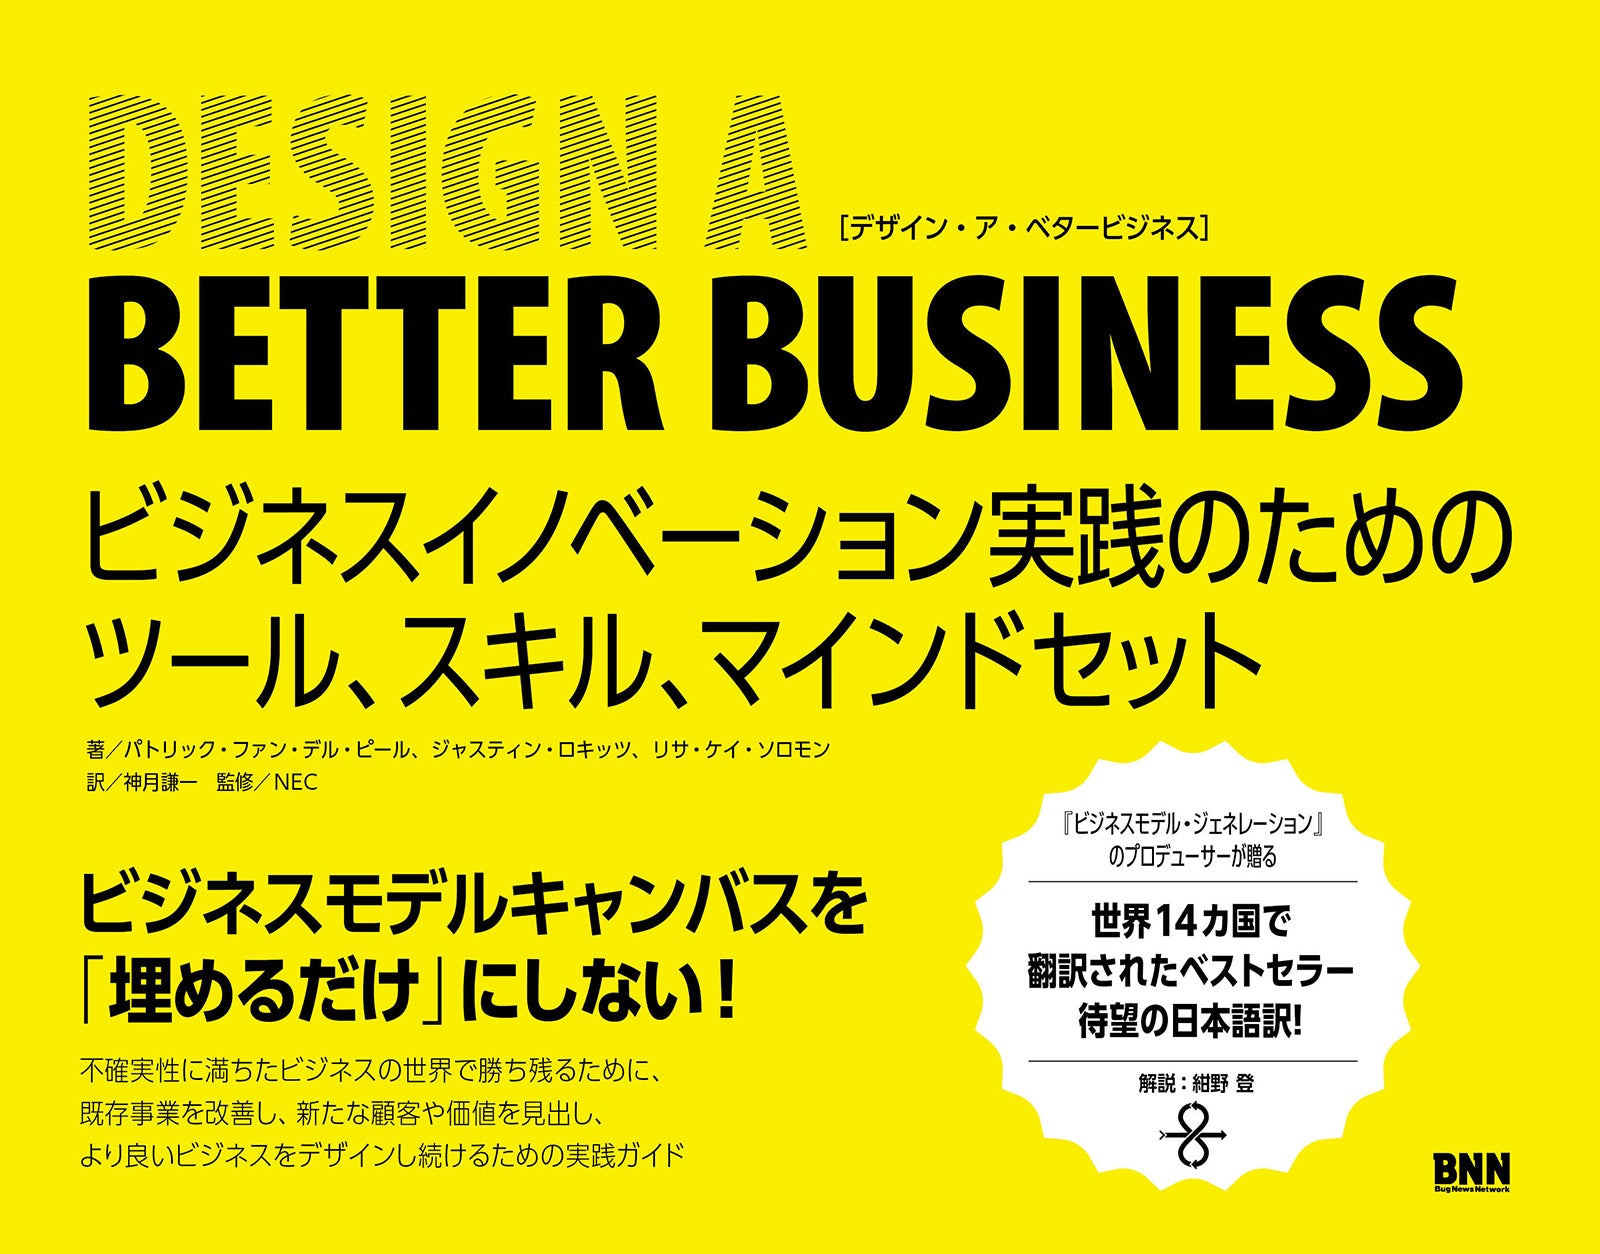 Design a Better Business - ビジネスイノベーション実践のためのツール、スキル、マインドセット | 株式会社ビー・エヌ・エヌ